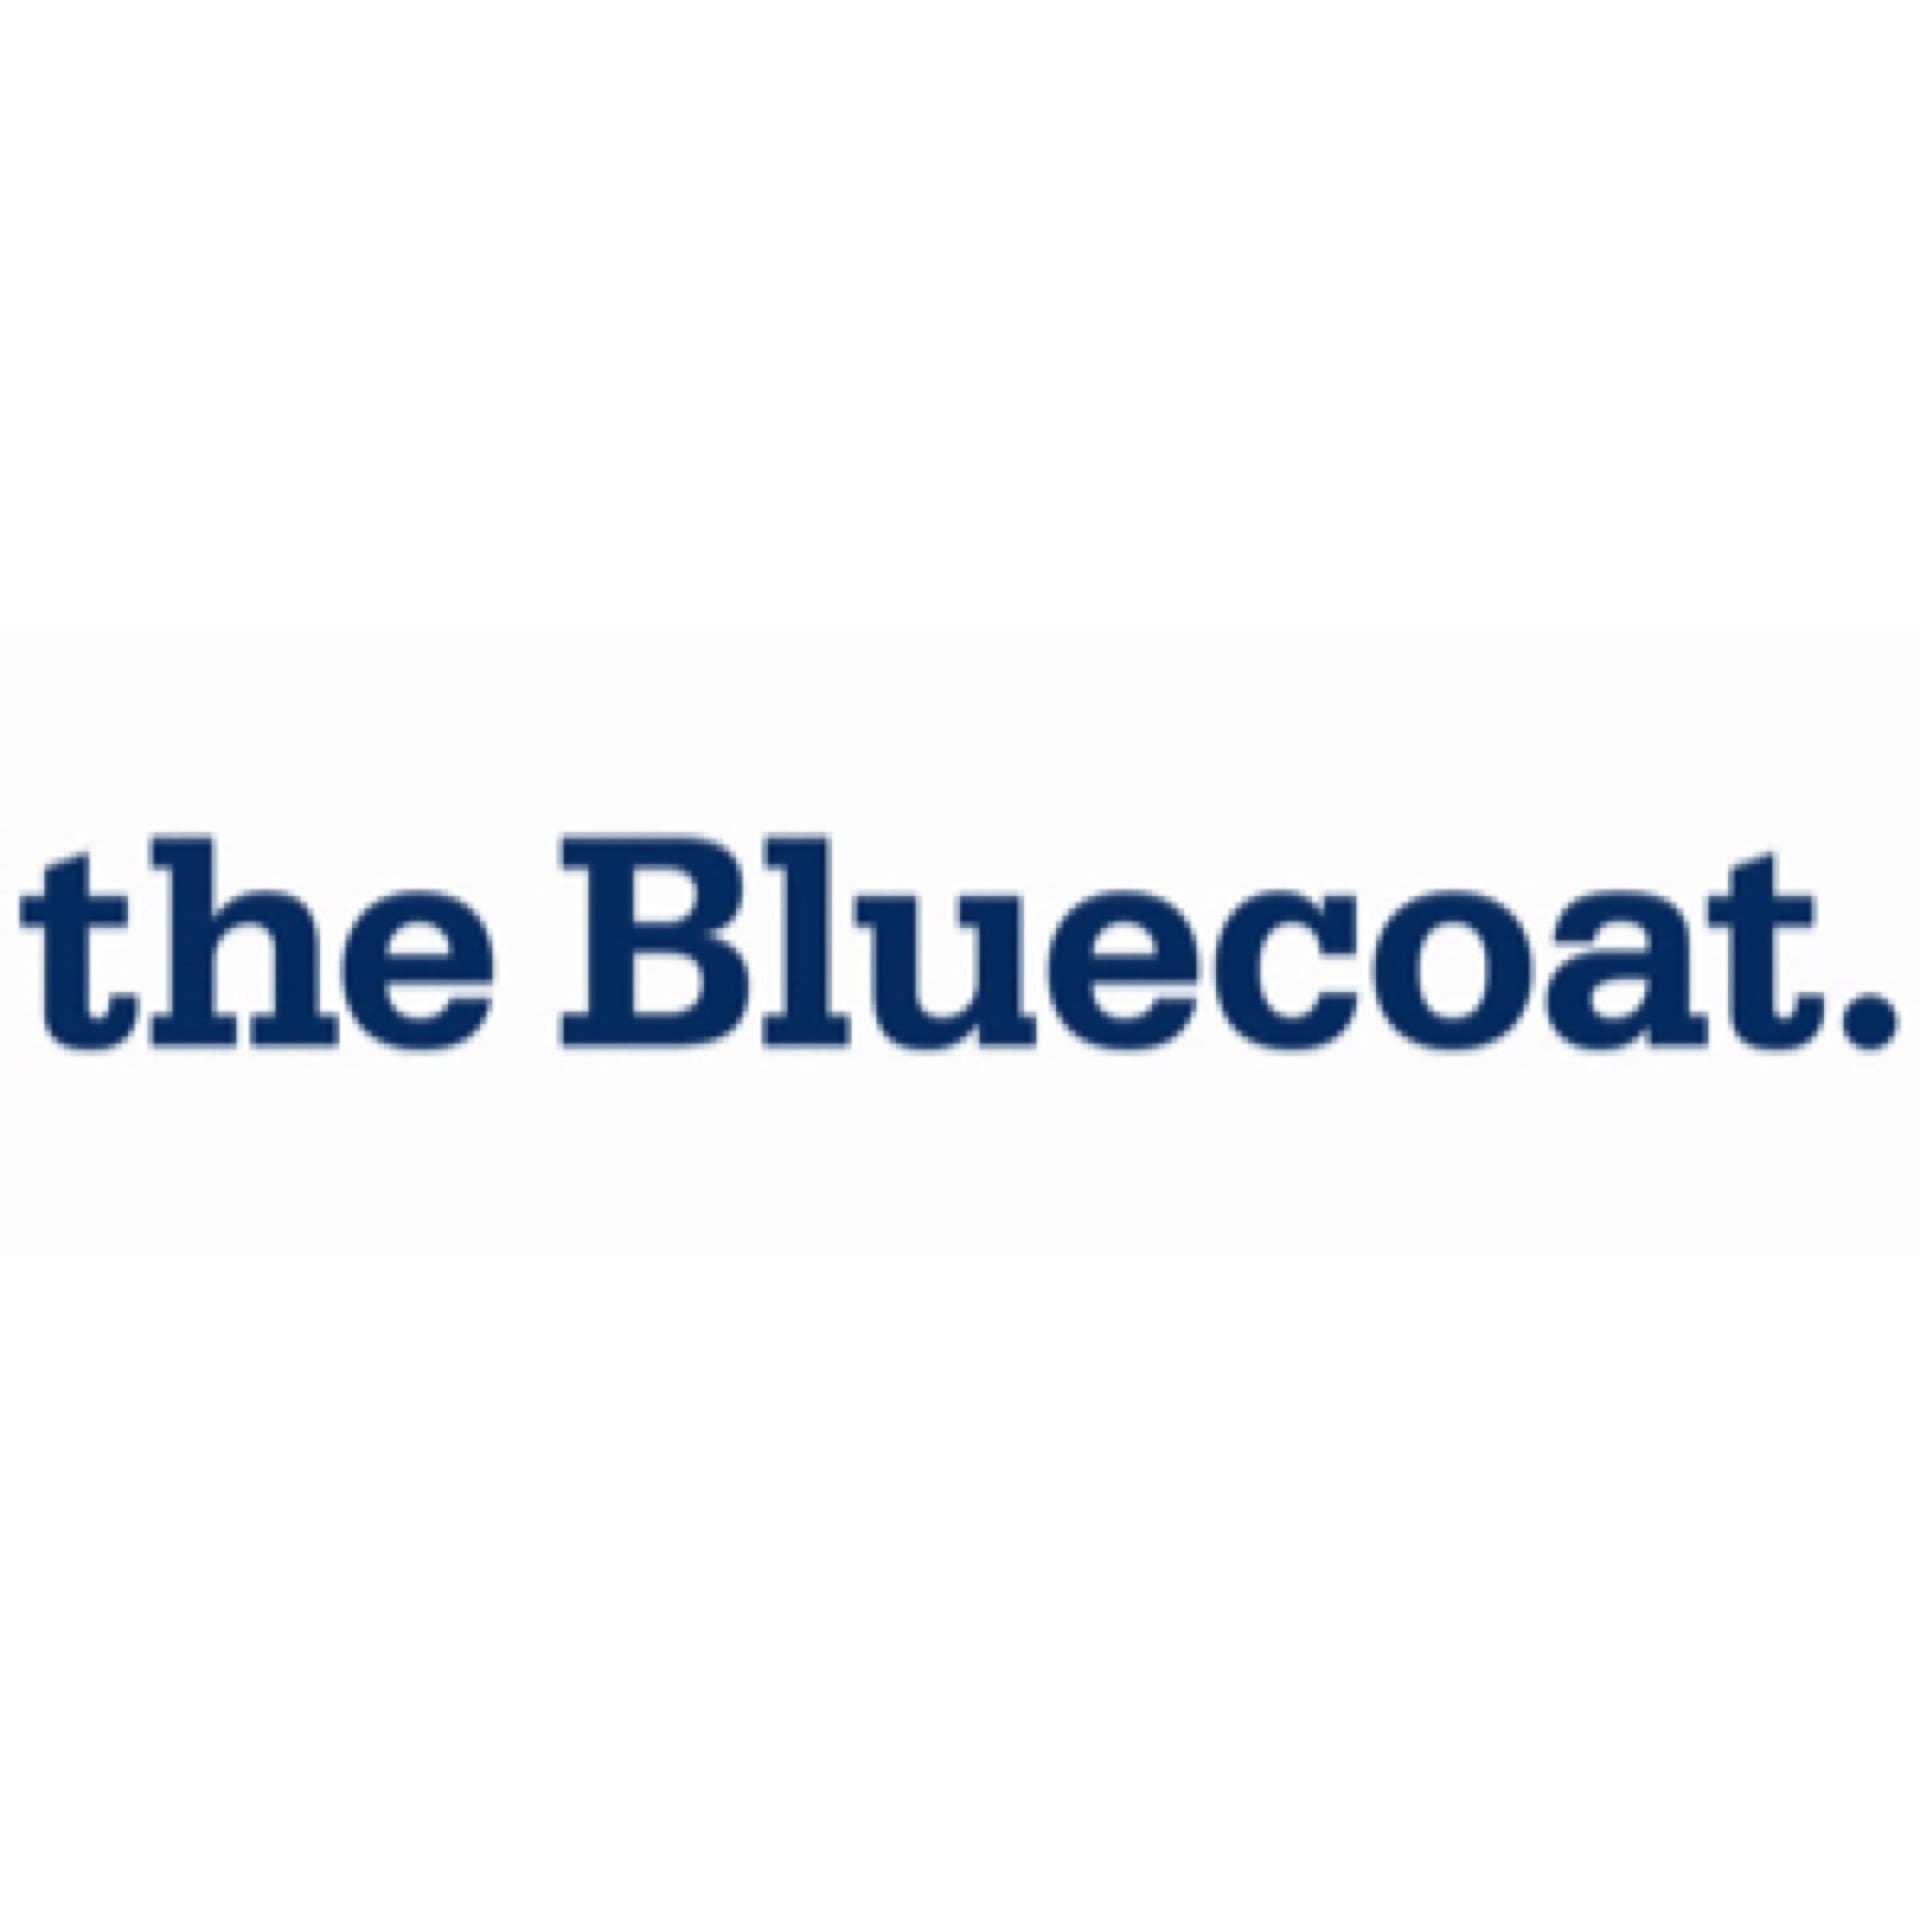 The Bluecoat